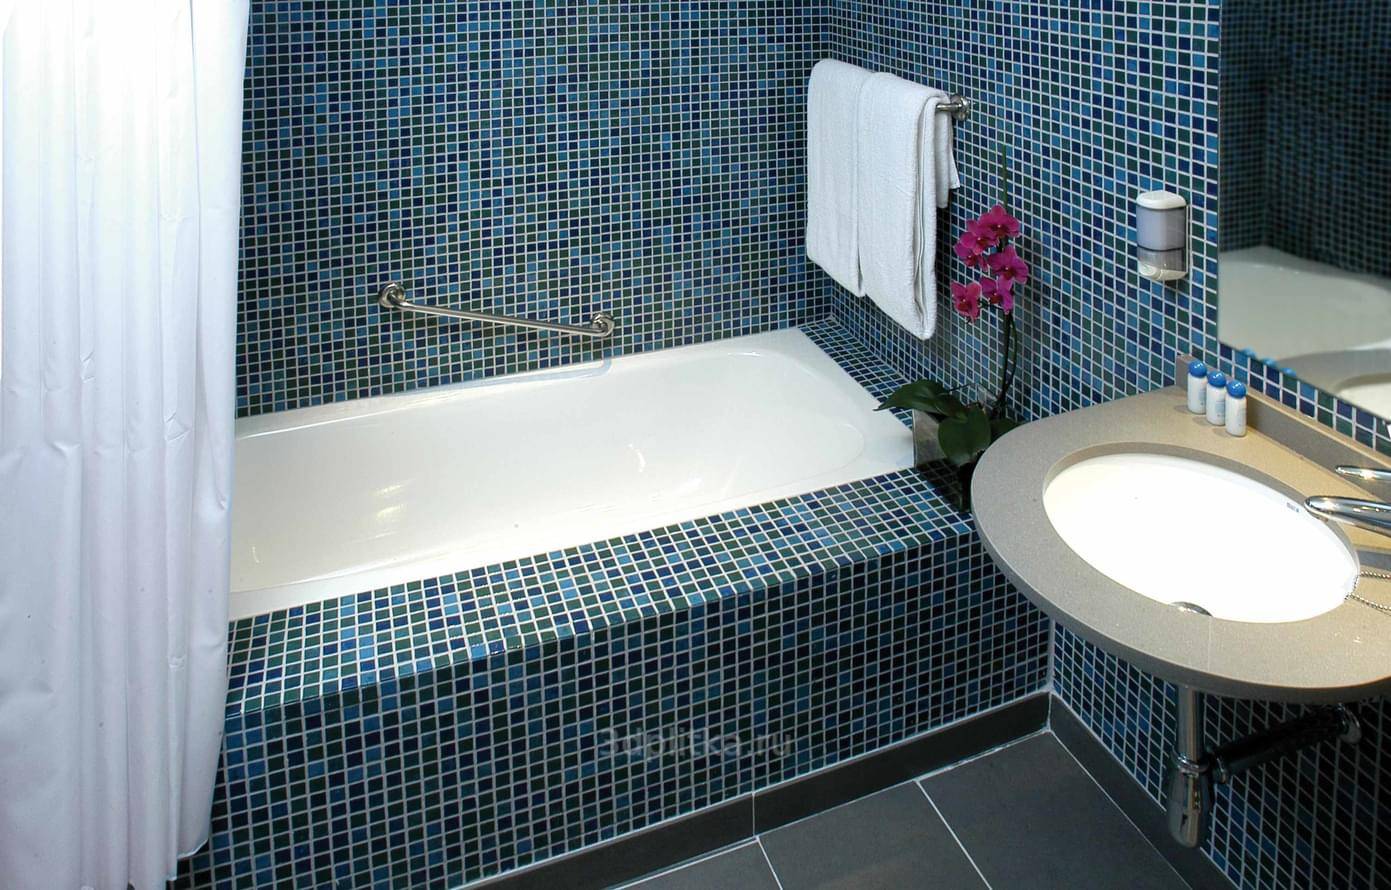 Использование мозаики в интерьере ванной и кухни: советы по дизайну